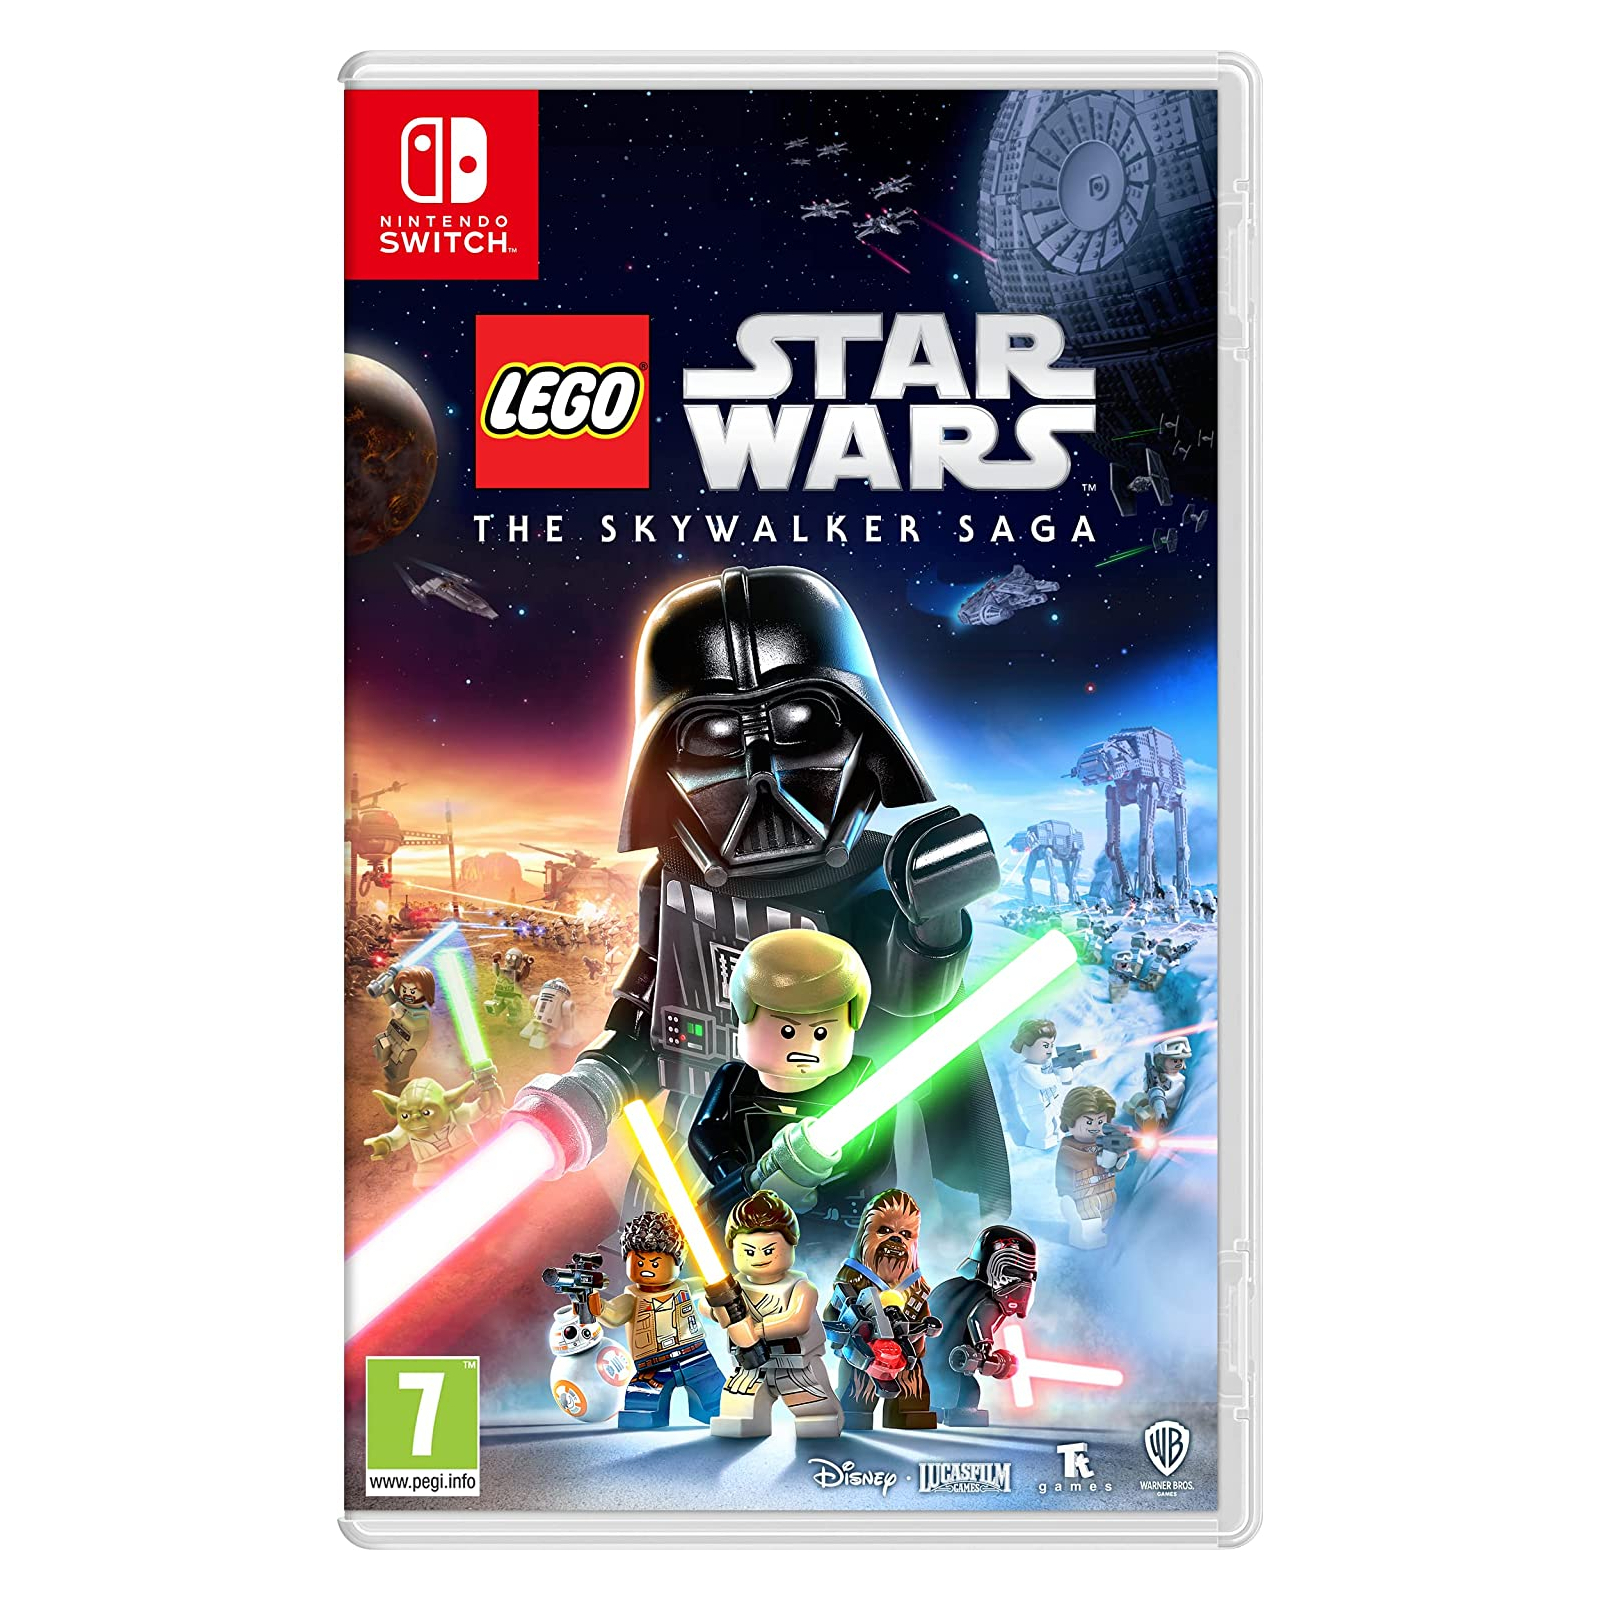 Игра Nintendo Lego Star Wars Skywalker Saga, картридж (5051890321534)